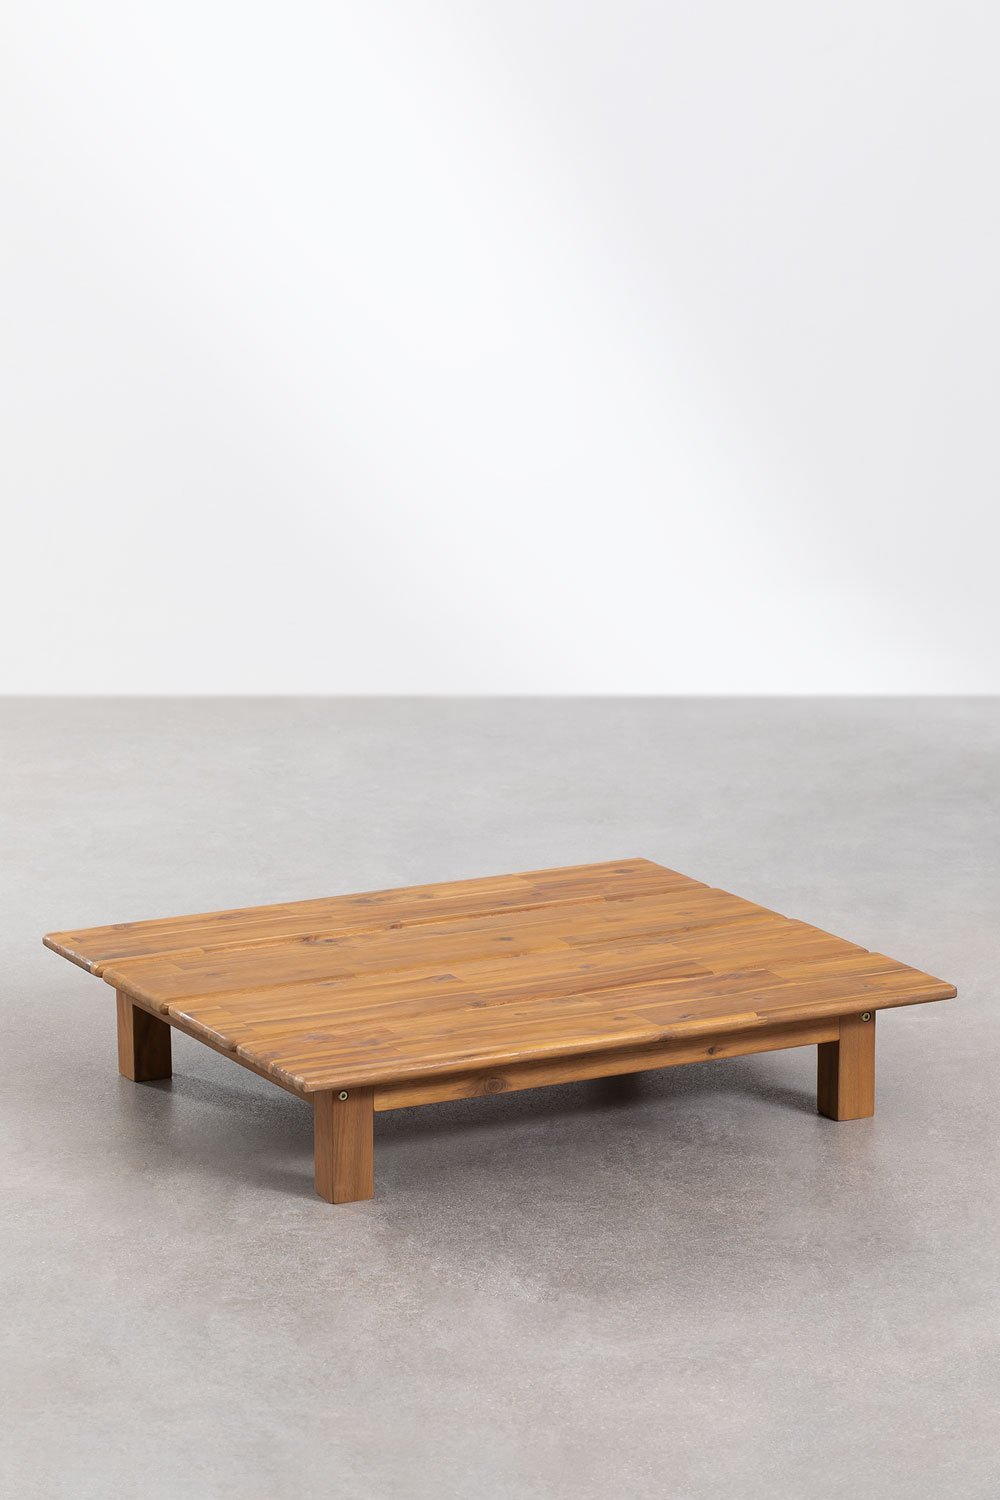 Tavolino da Giardino Rettangolare in Legno di Acacia (85x75 cm) Brina, immagine della galleria 1